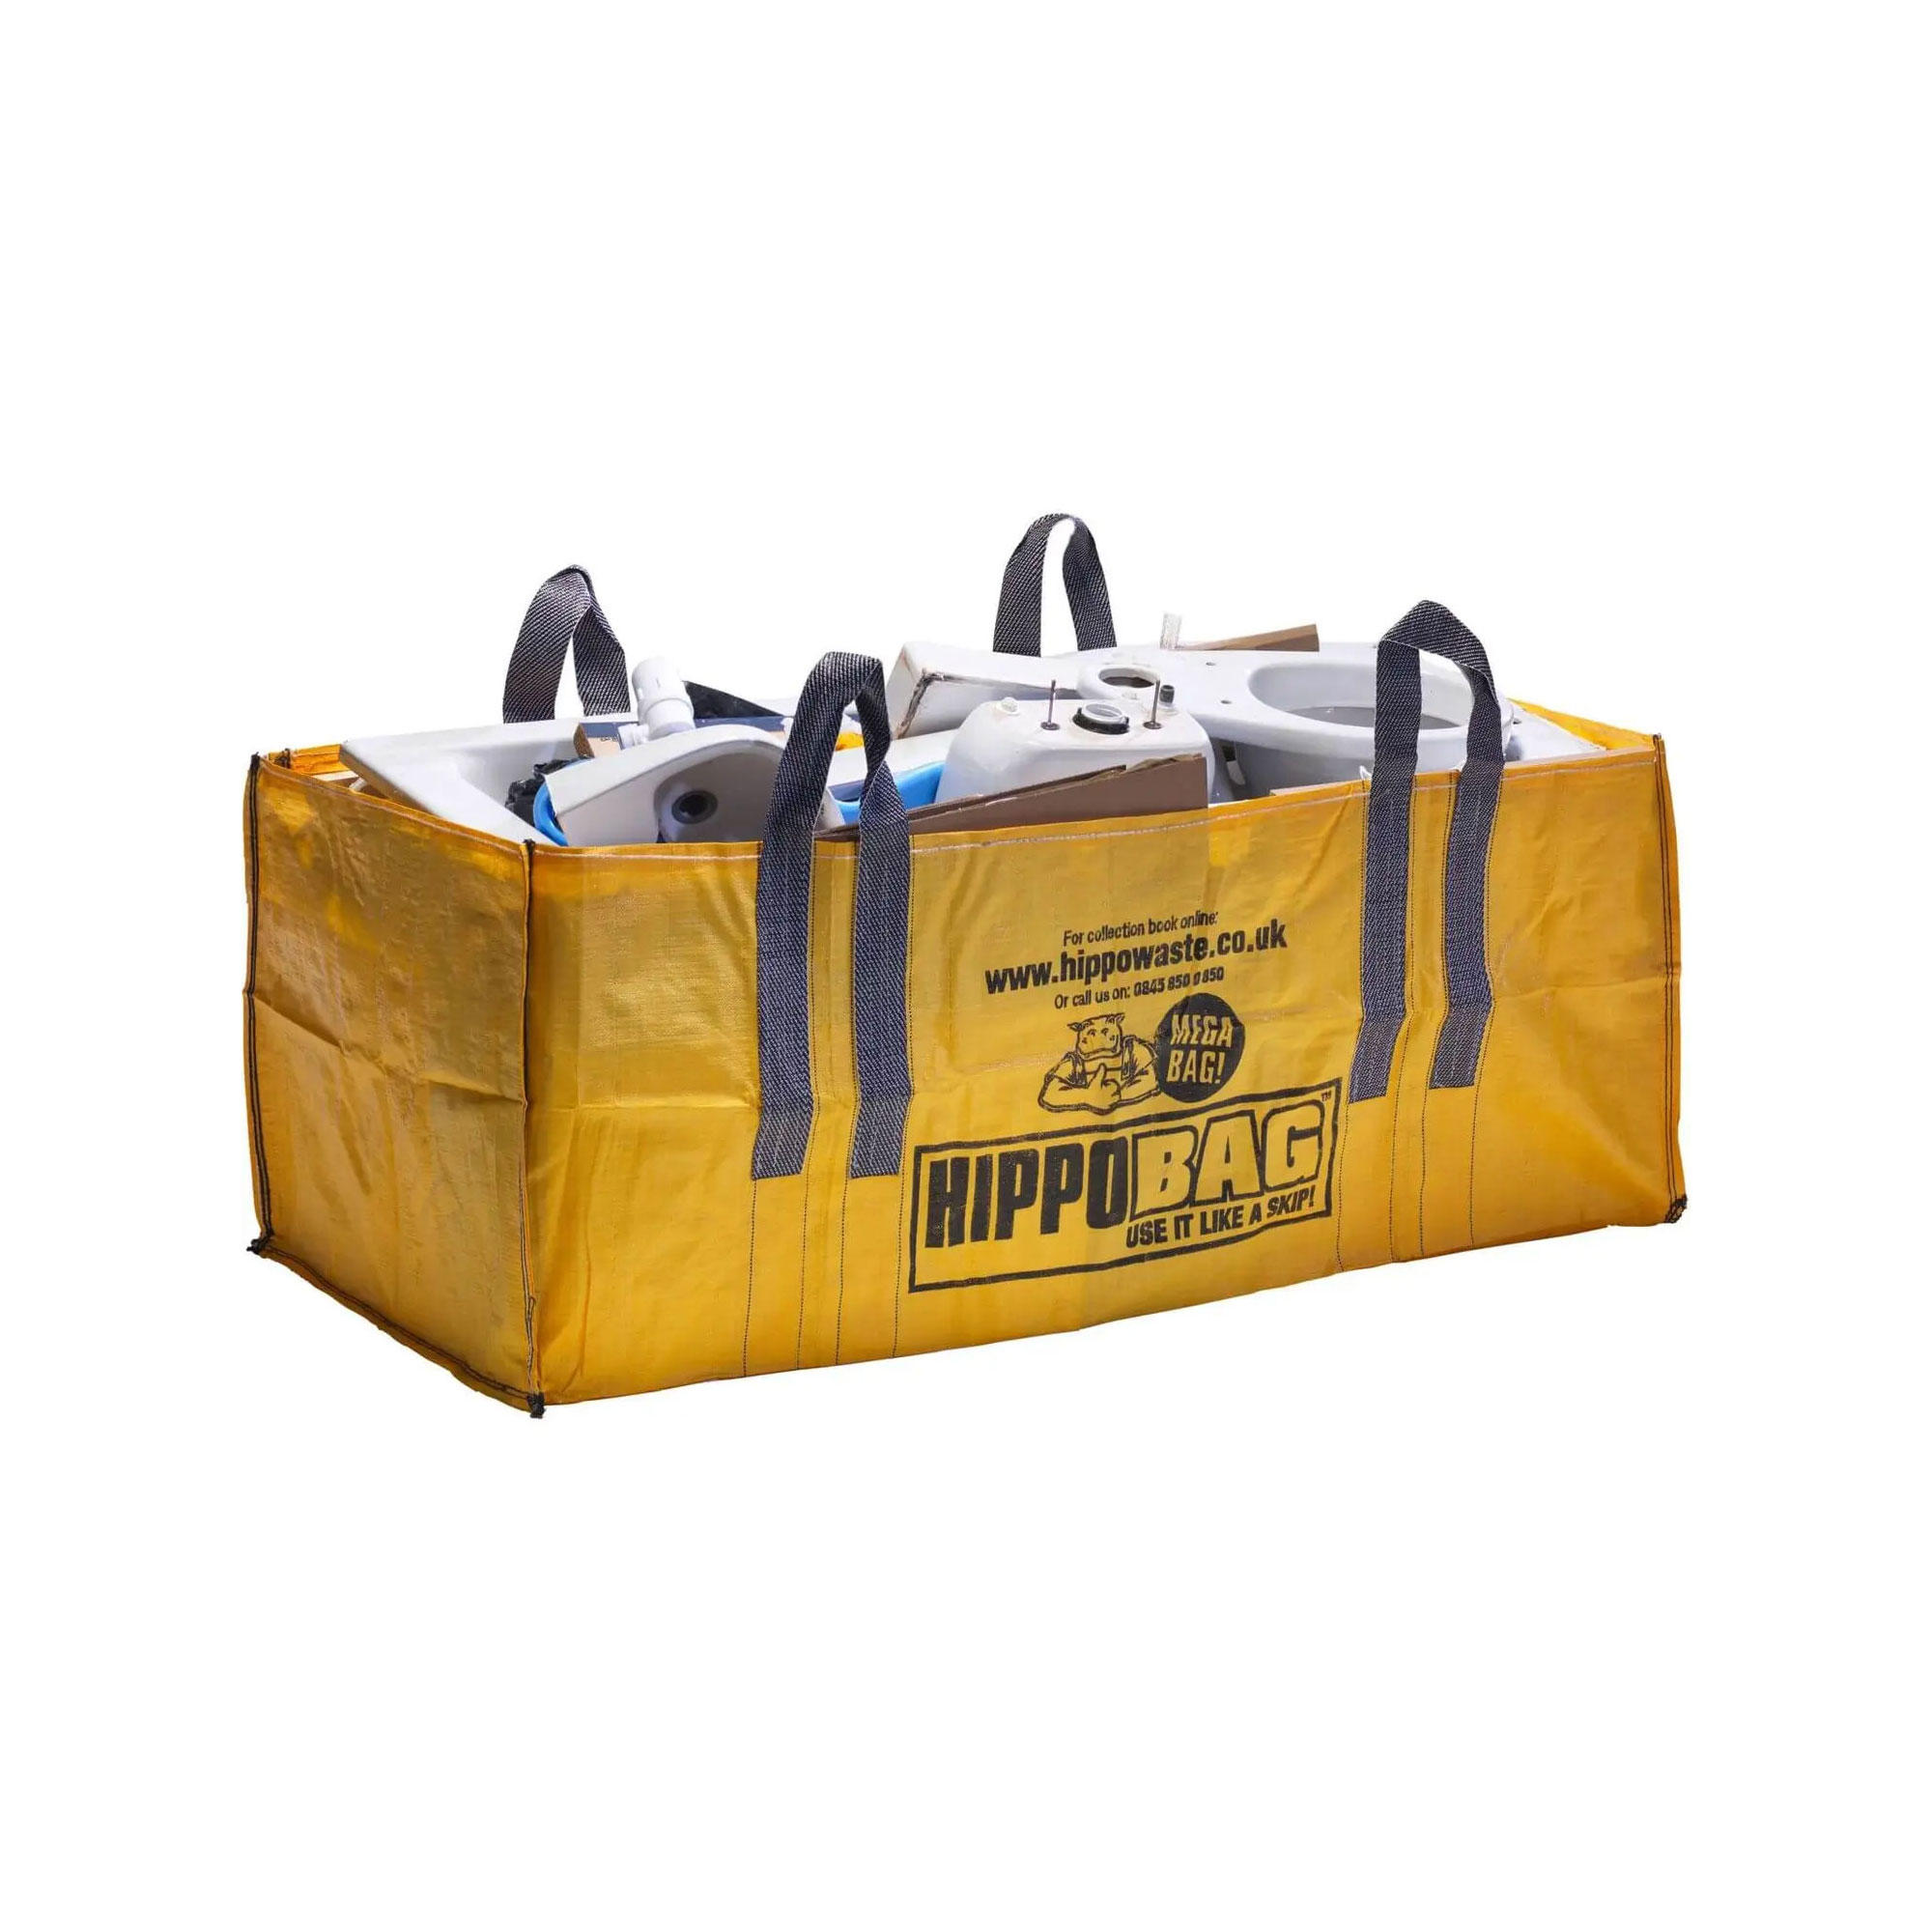 A Hippo mega bag